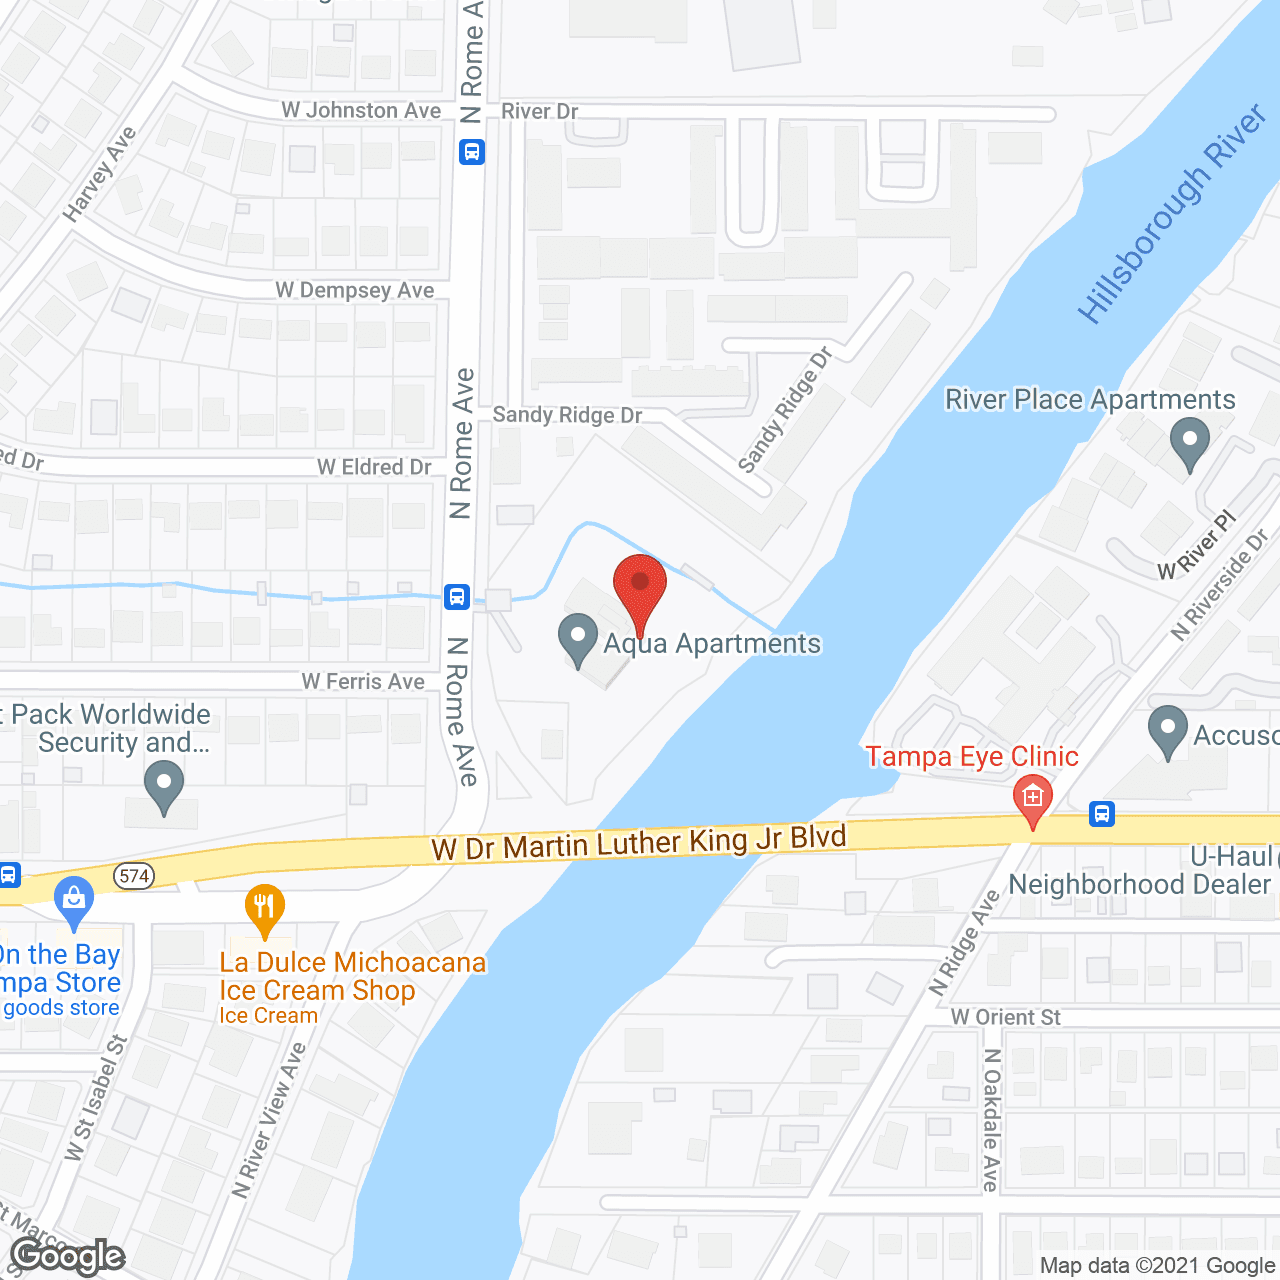 Aqua Apartments in google map